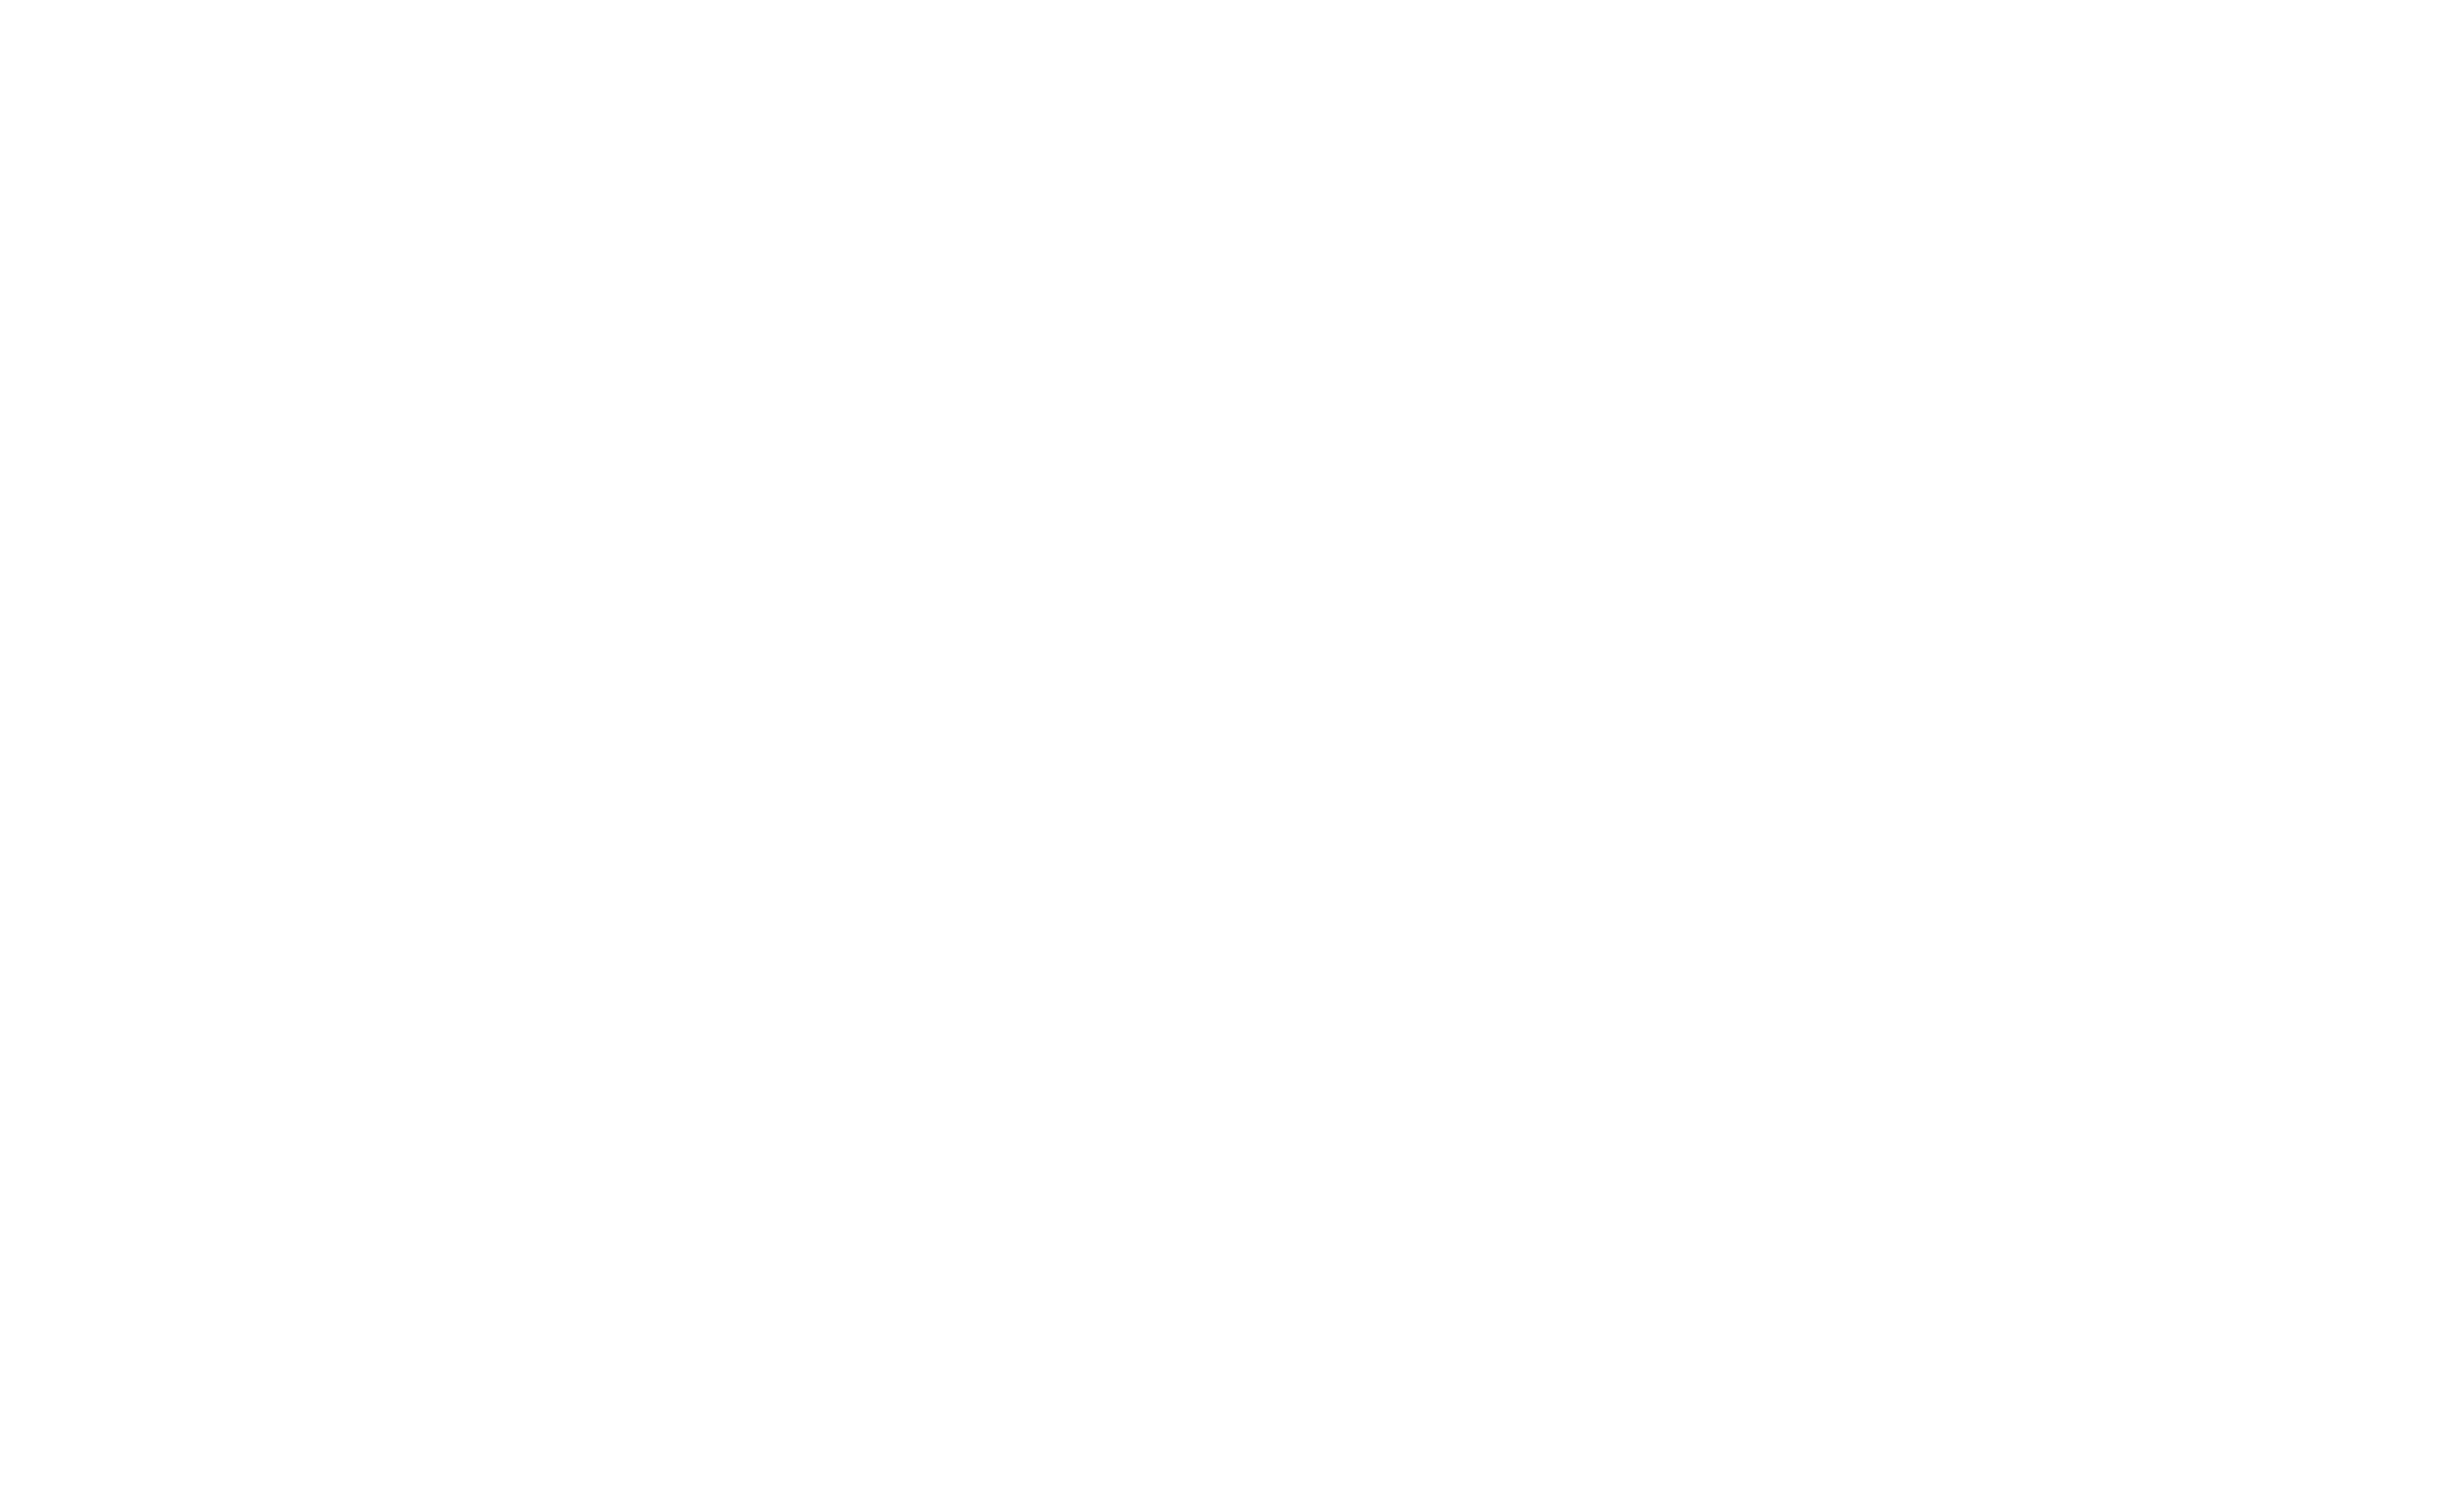 株式会社ウガジン Welcome to Our Corporate Site